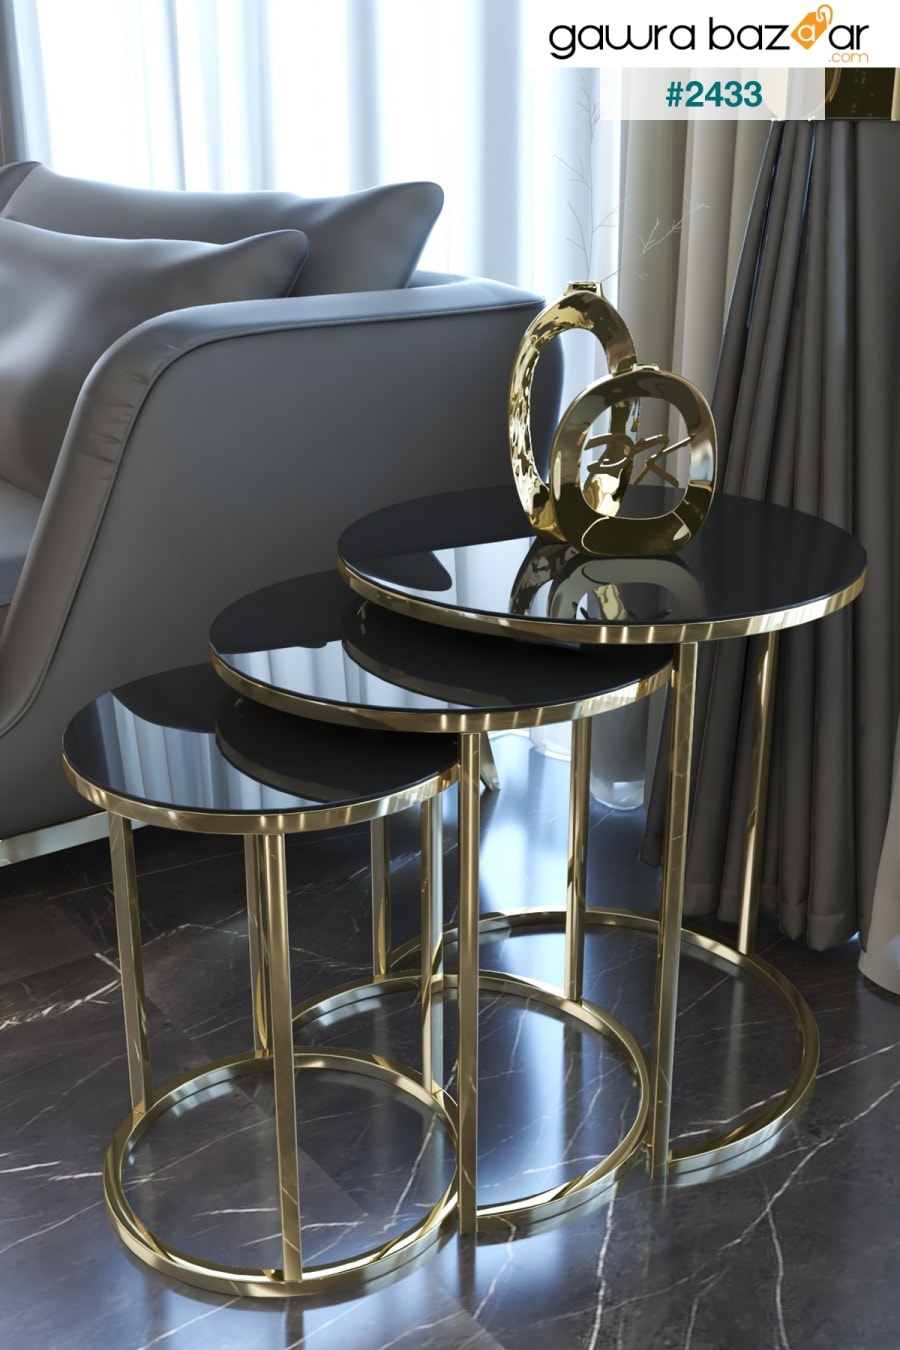 طقم طاولة متداخلة وطاولة مركزية من سيلين 4 ، أرجل ذهبية ، زجاج أسود Puklife 1